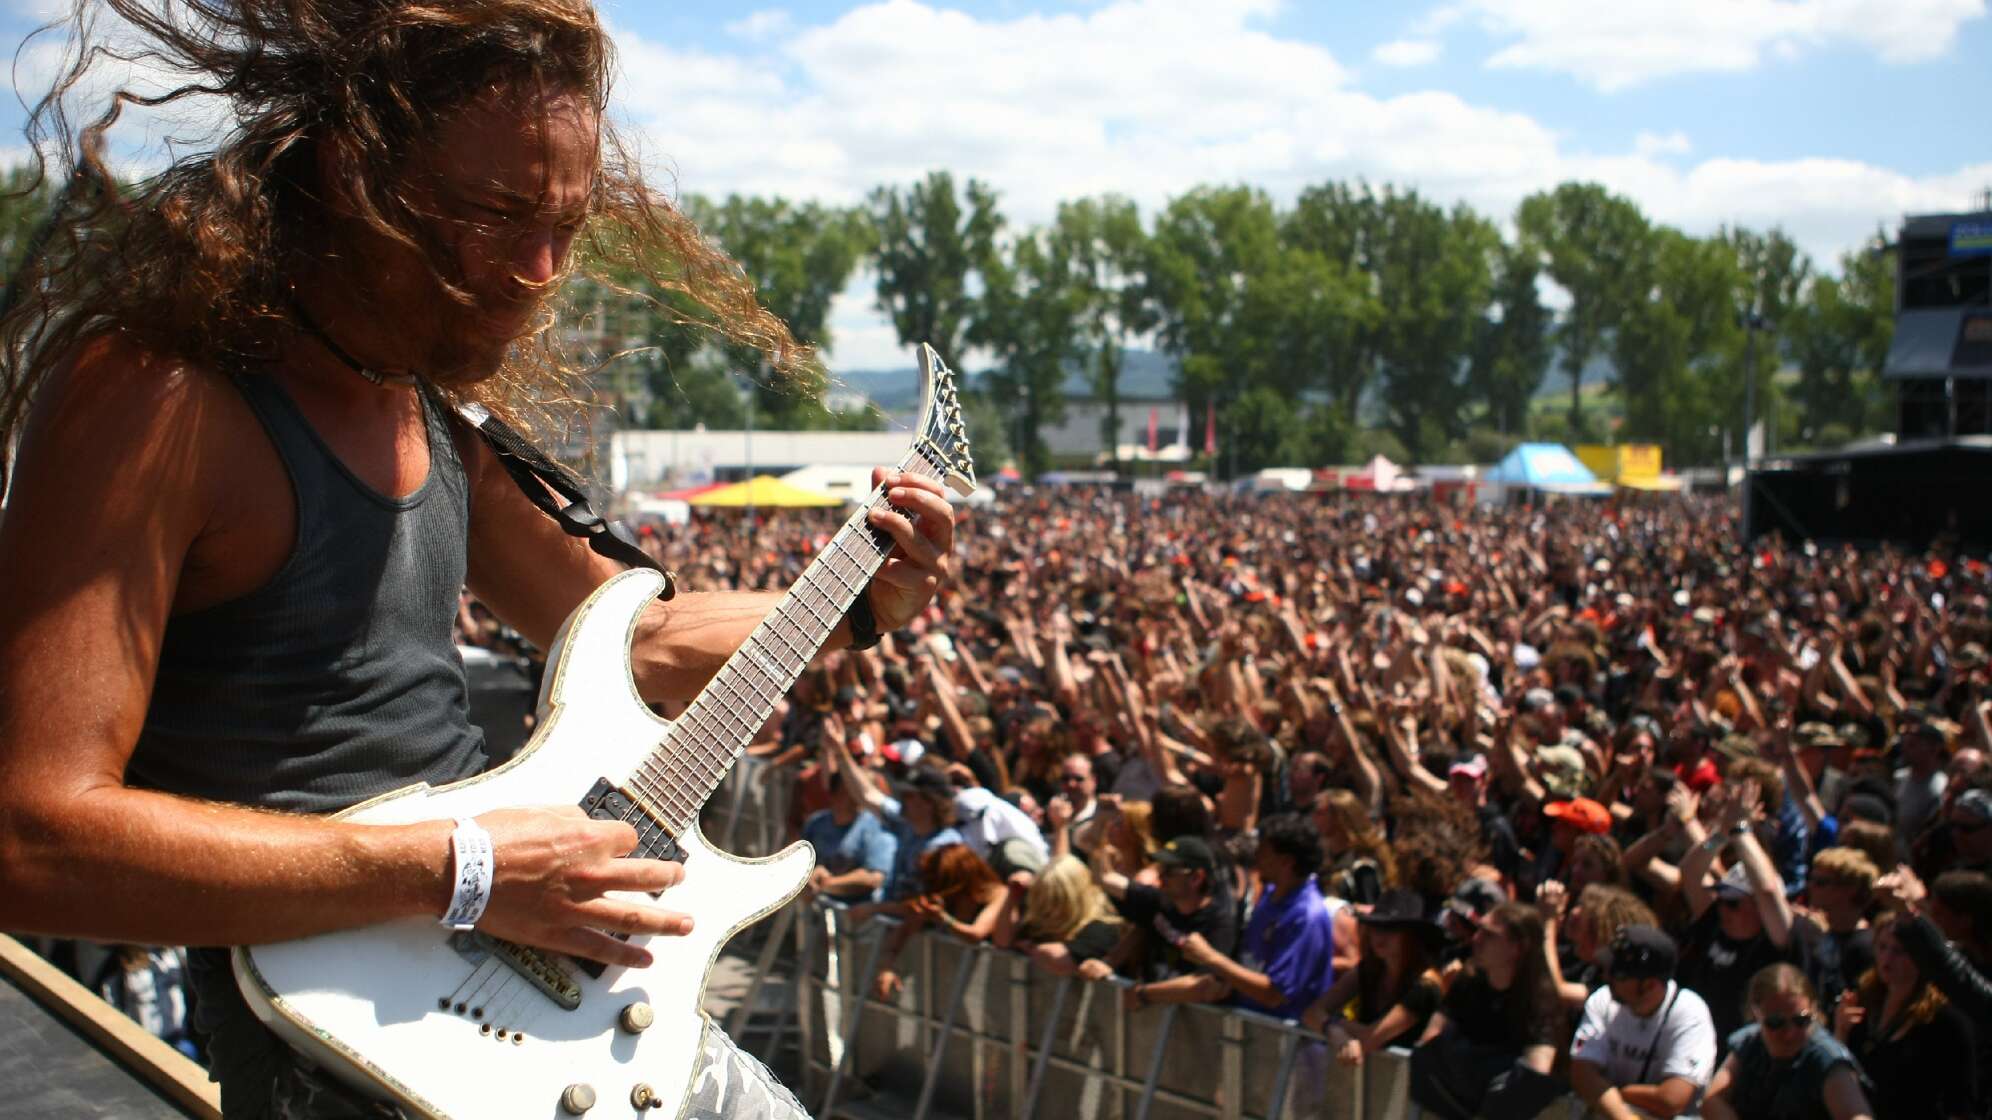 Gitarrist auf der Bühne beim Bang Your Head Festival 2008 mit Menschen im Hintergrund